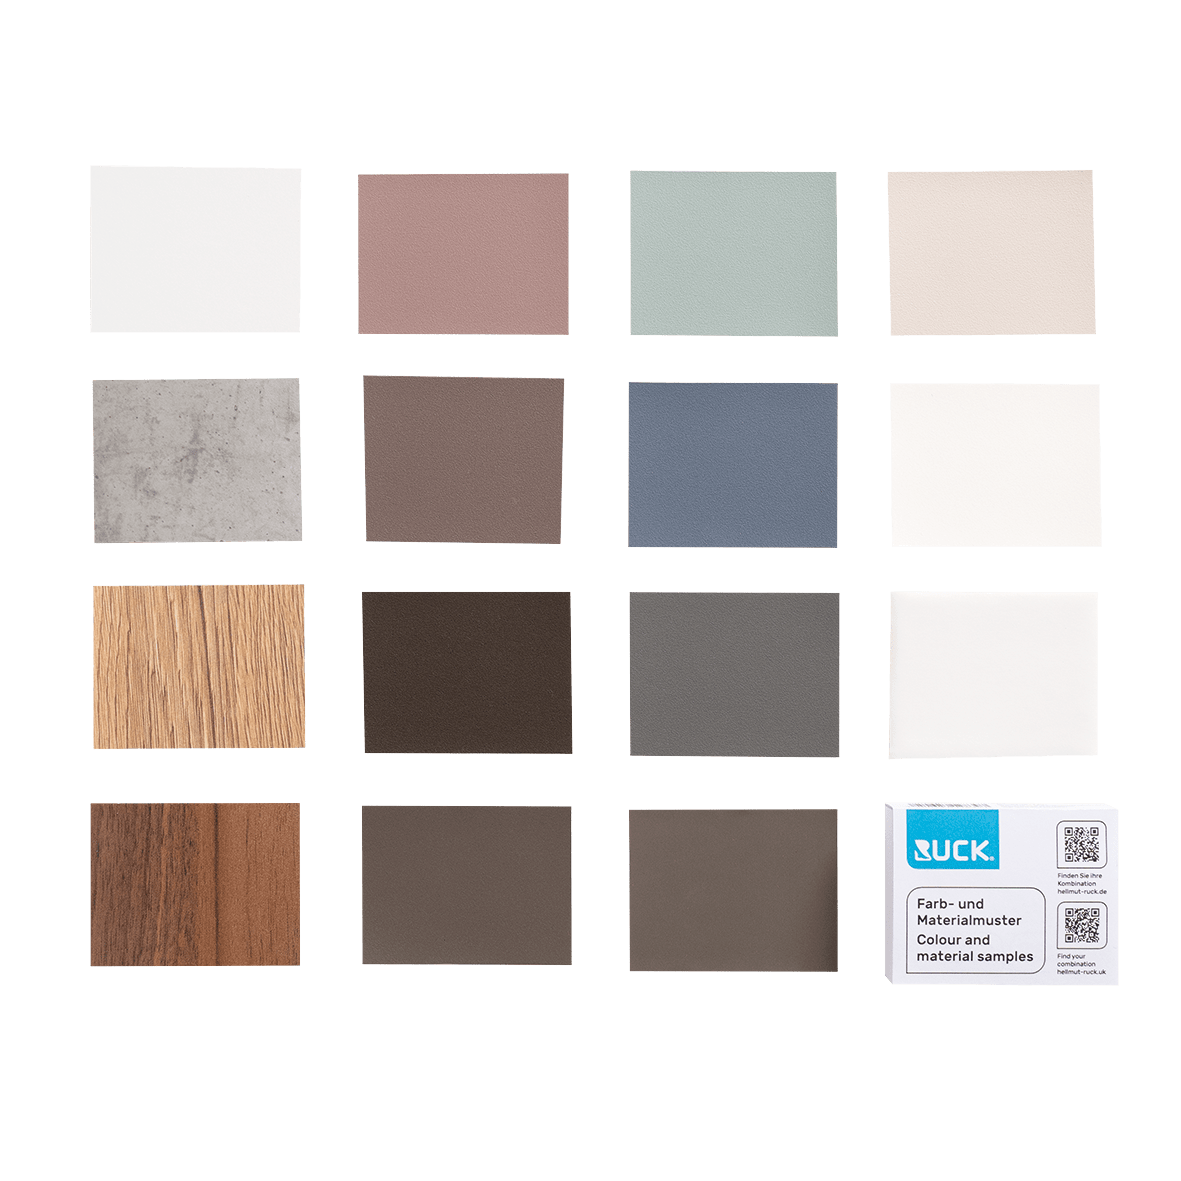 RUCK Farb- und Materialmuster standard, premium und CPL